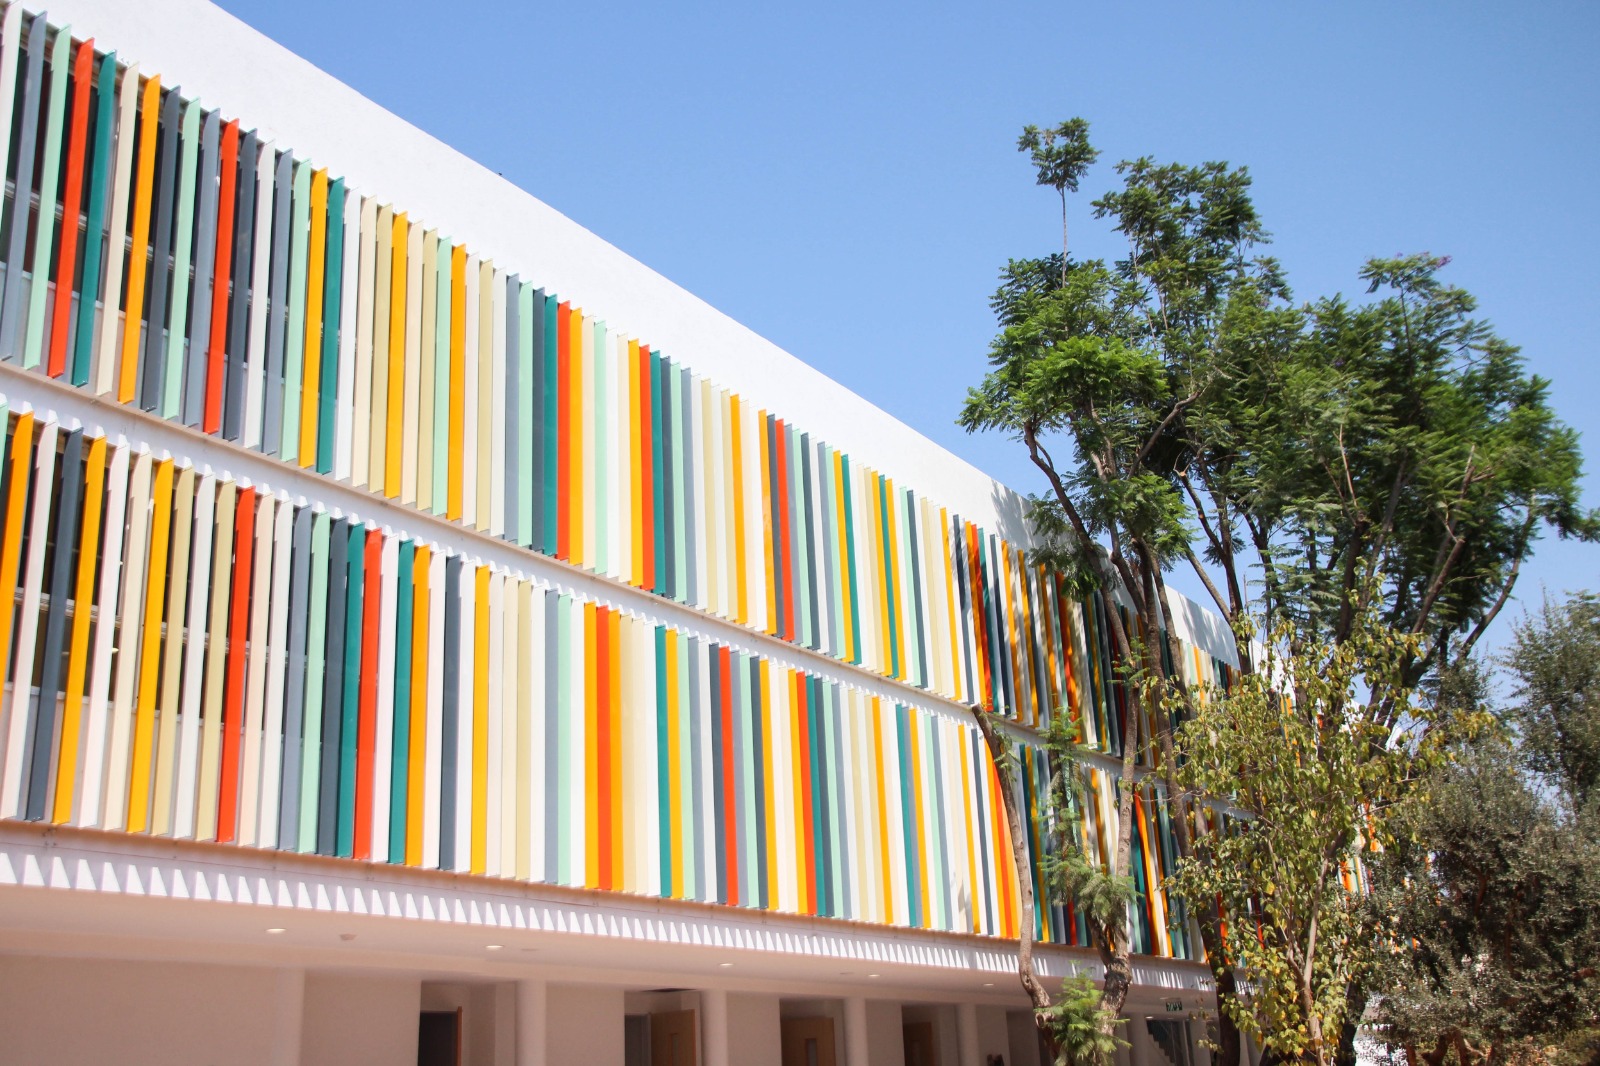 בית הספר רמז המחודש בכפר סבא, זכה במקום השני בתחרות אות האדריכלות הישראלית בקטגוריית מבנה חינוך